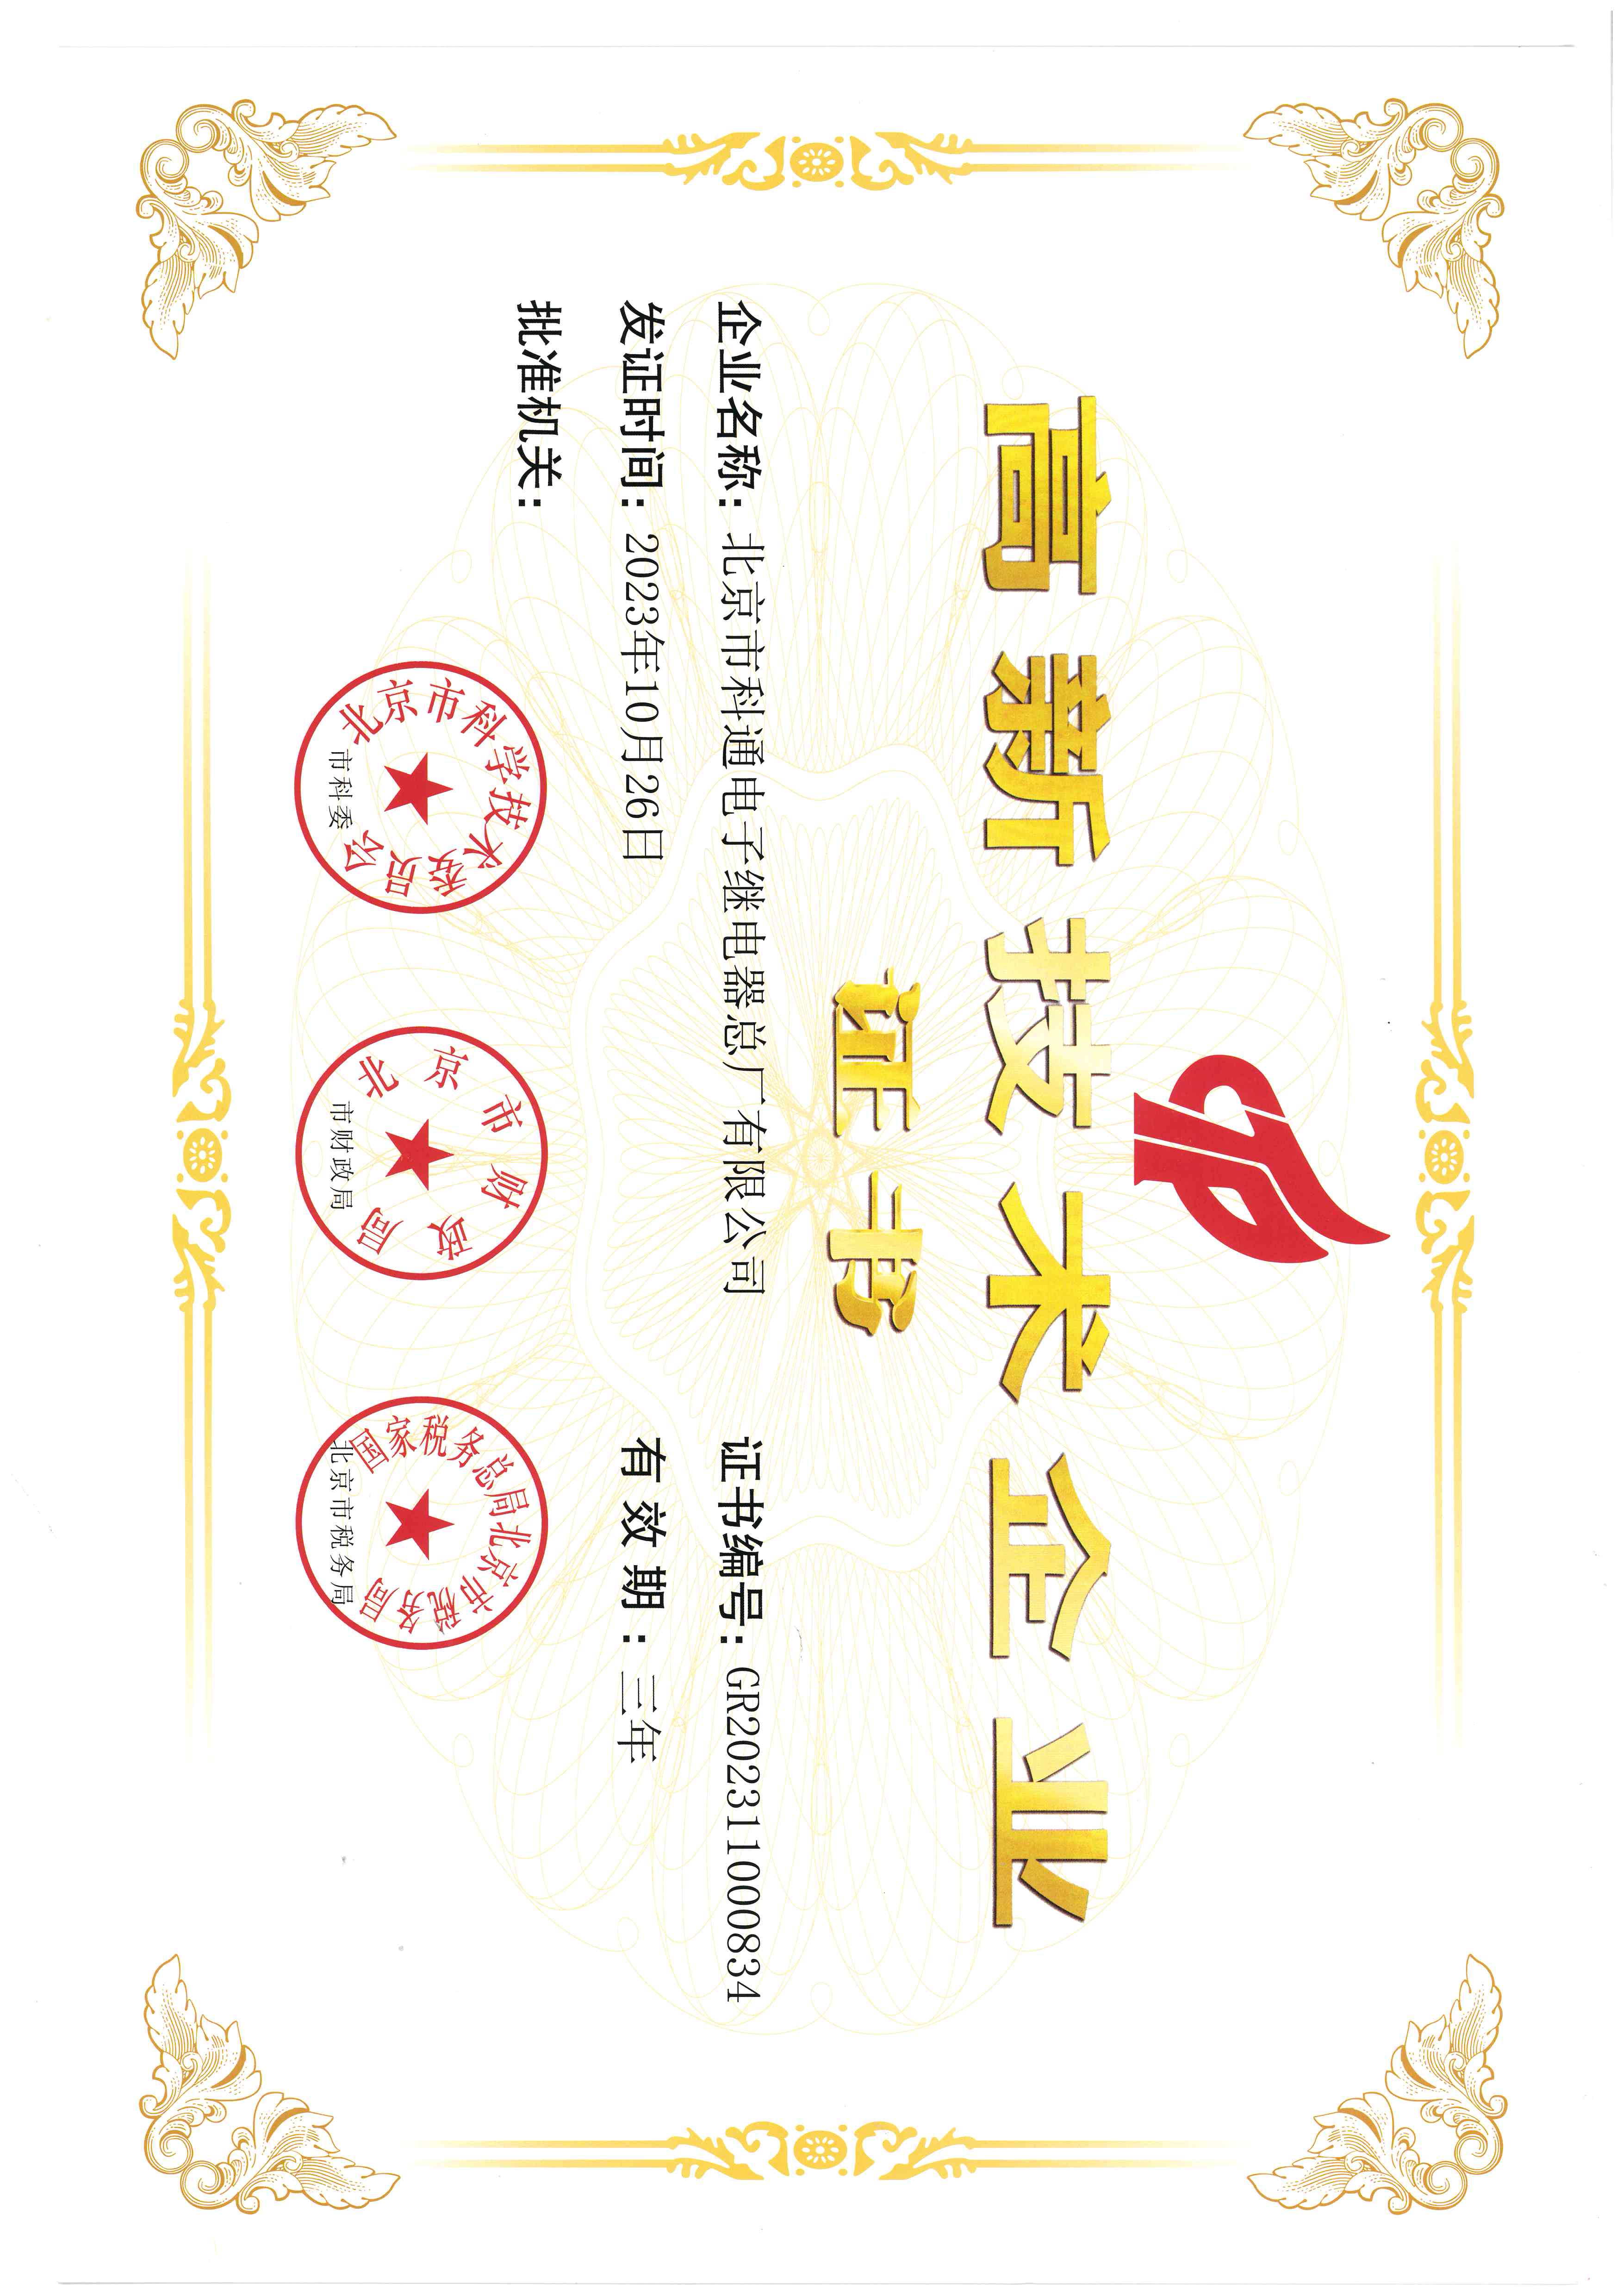 科技创新 载誉前行 ——科通公司连续荣获两项北京市市级荣誉